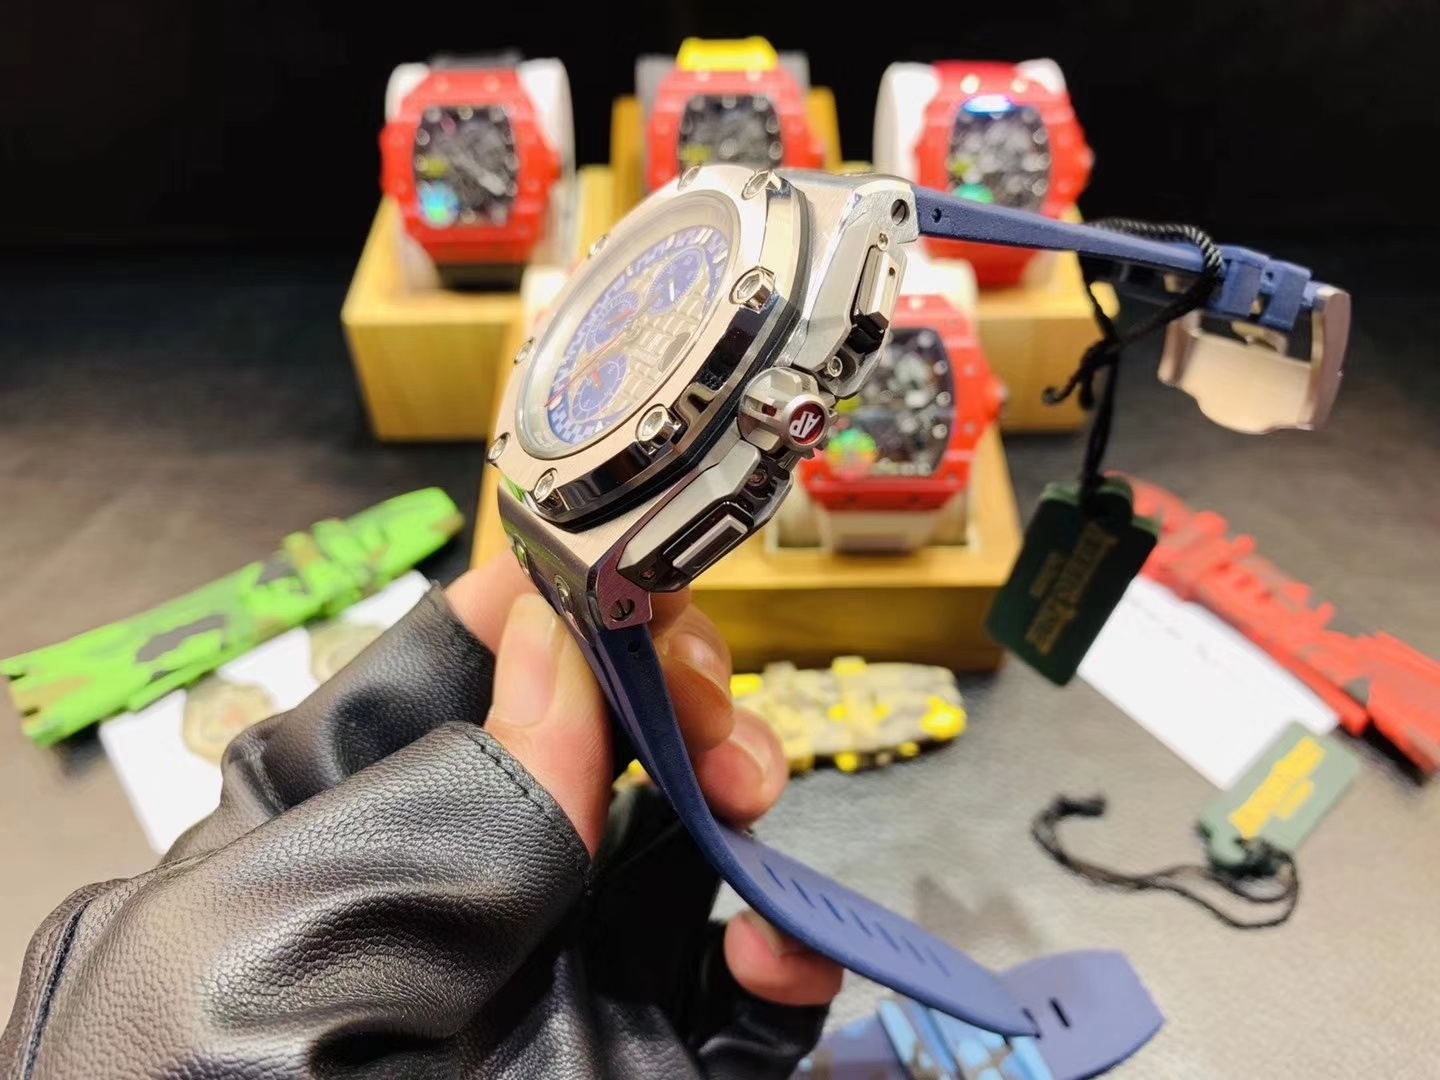 随机配送迷彩橡胶带一副爱比Auders Pigt舒马赫皇家橡树离岸型限量多功能机械腕表